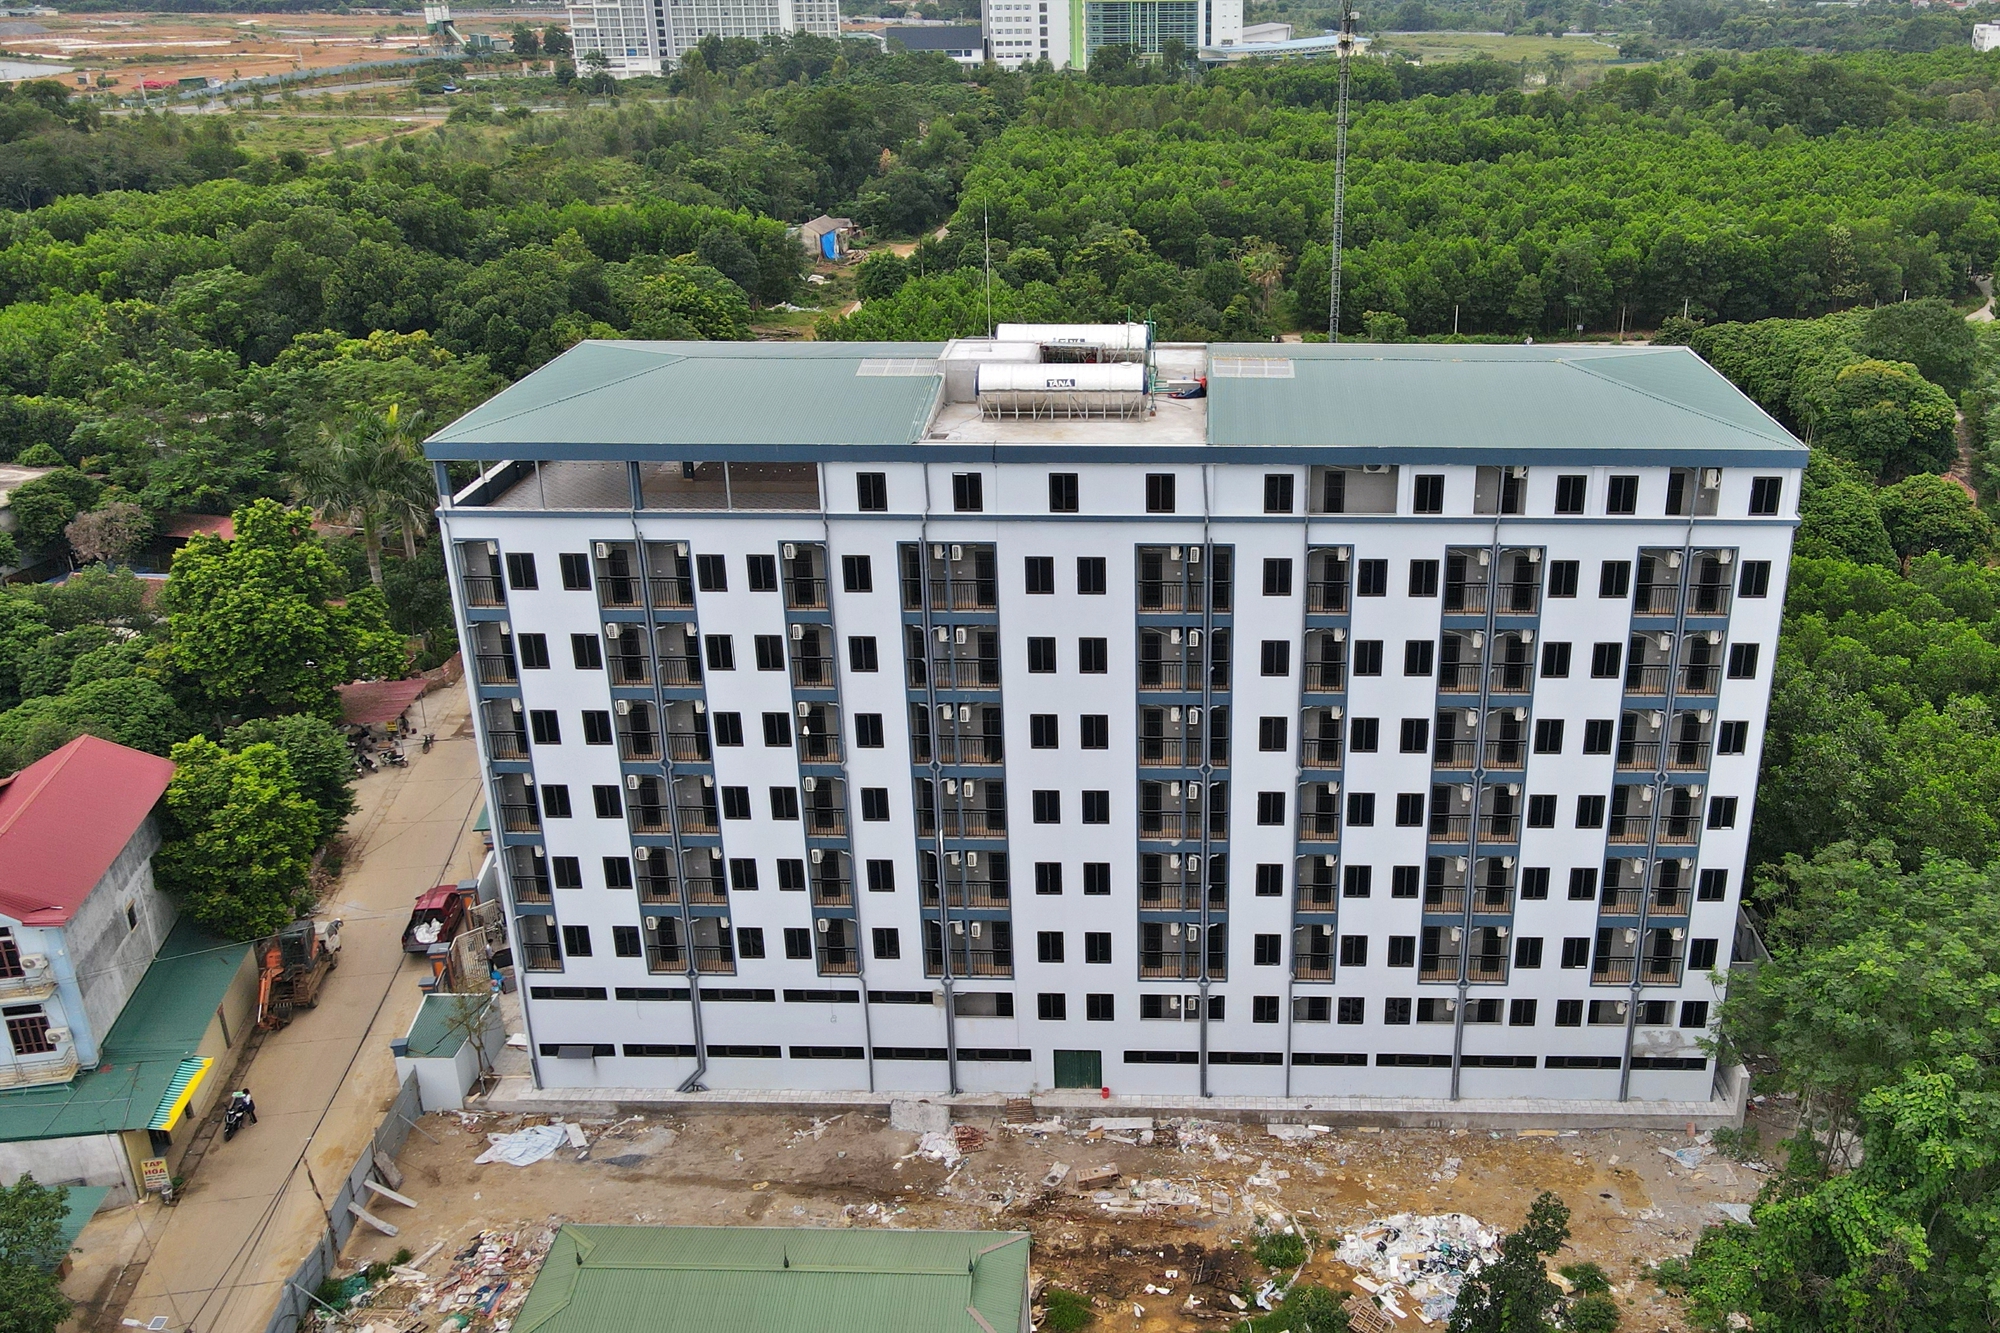 Chung cư mini 'khủng' ở Hà Nội: Cấp phép 3 tầng, xây thành 9 tầng - Ảnh 1.